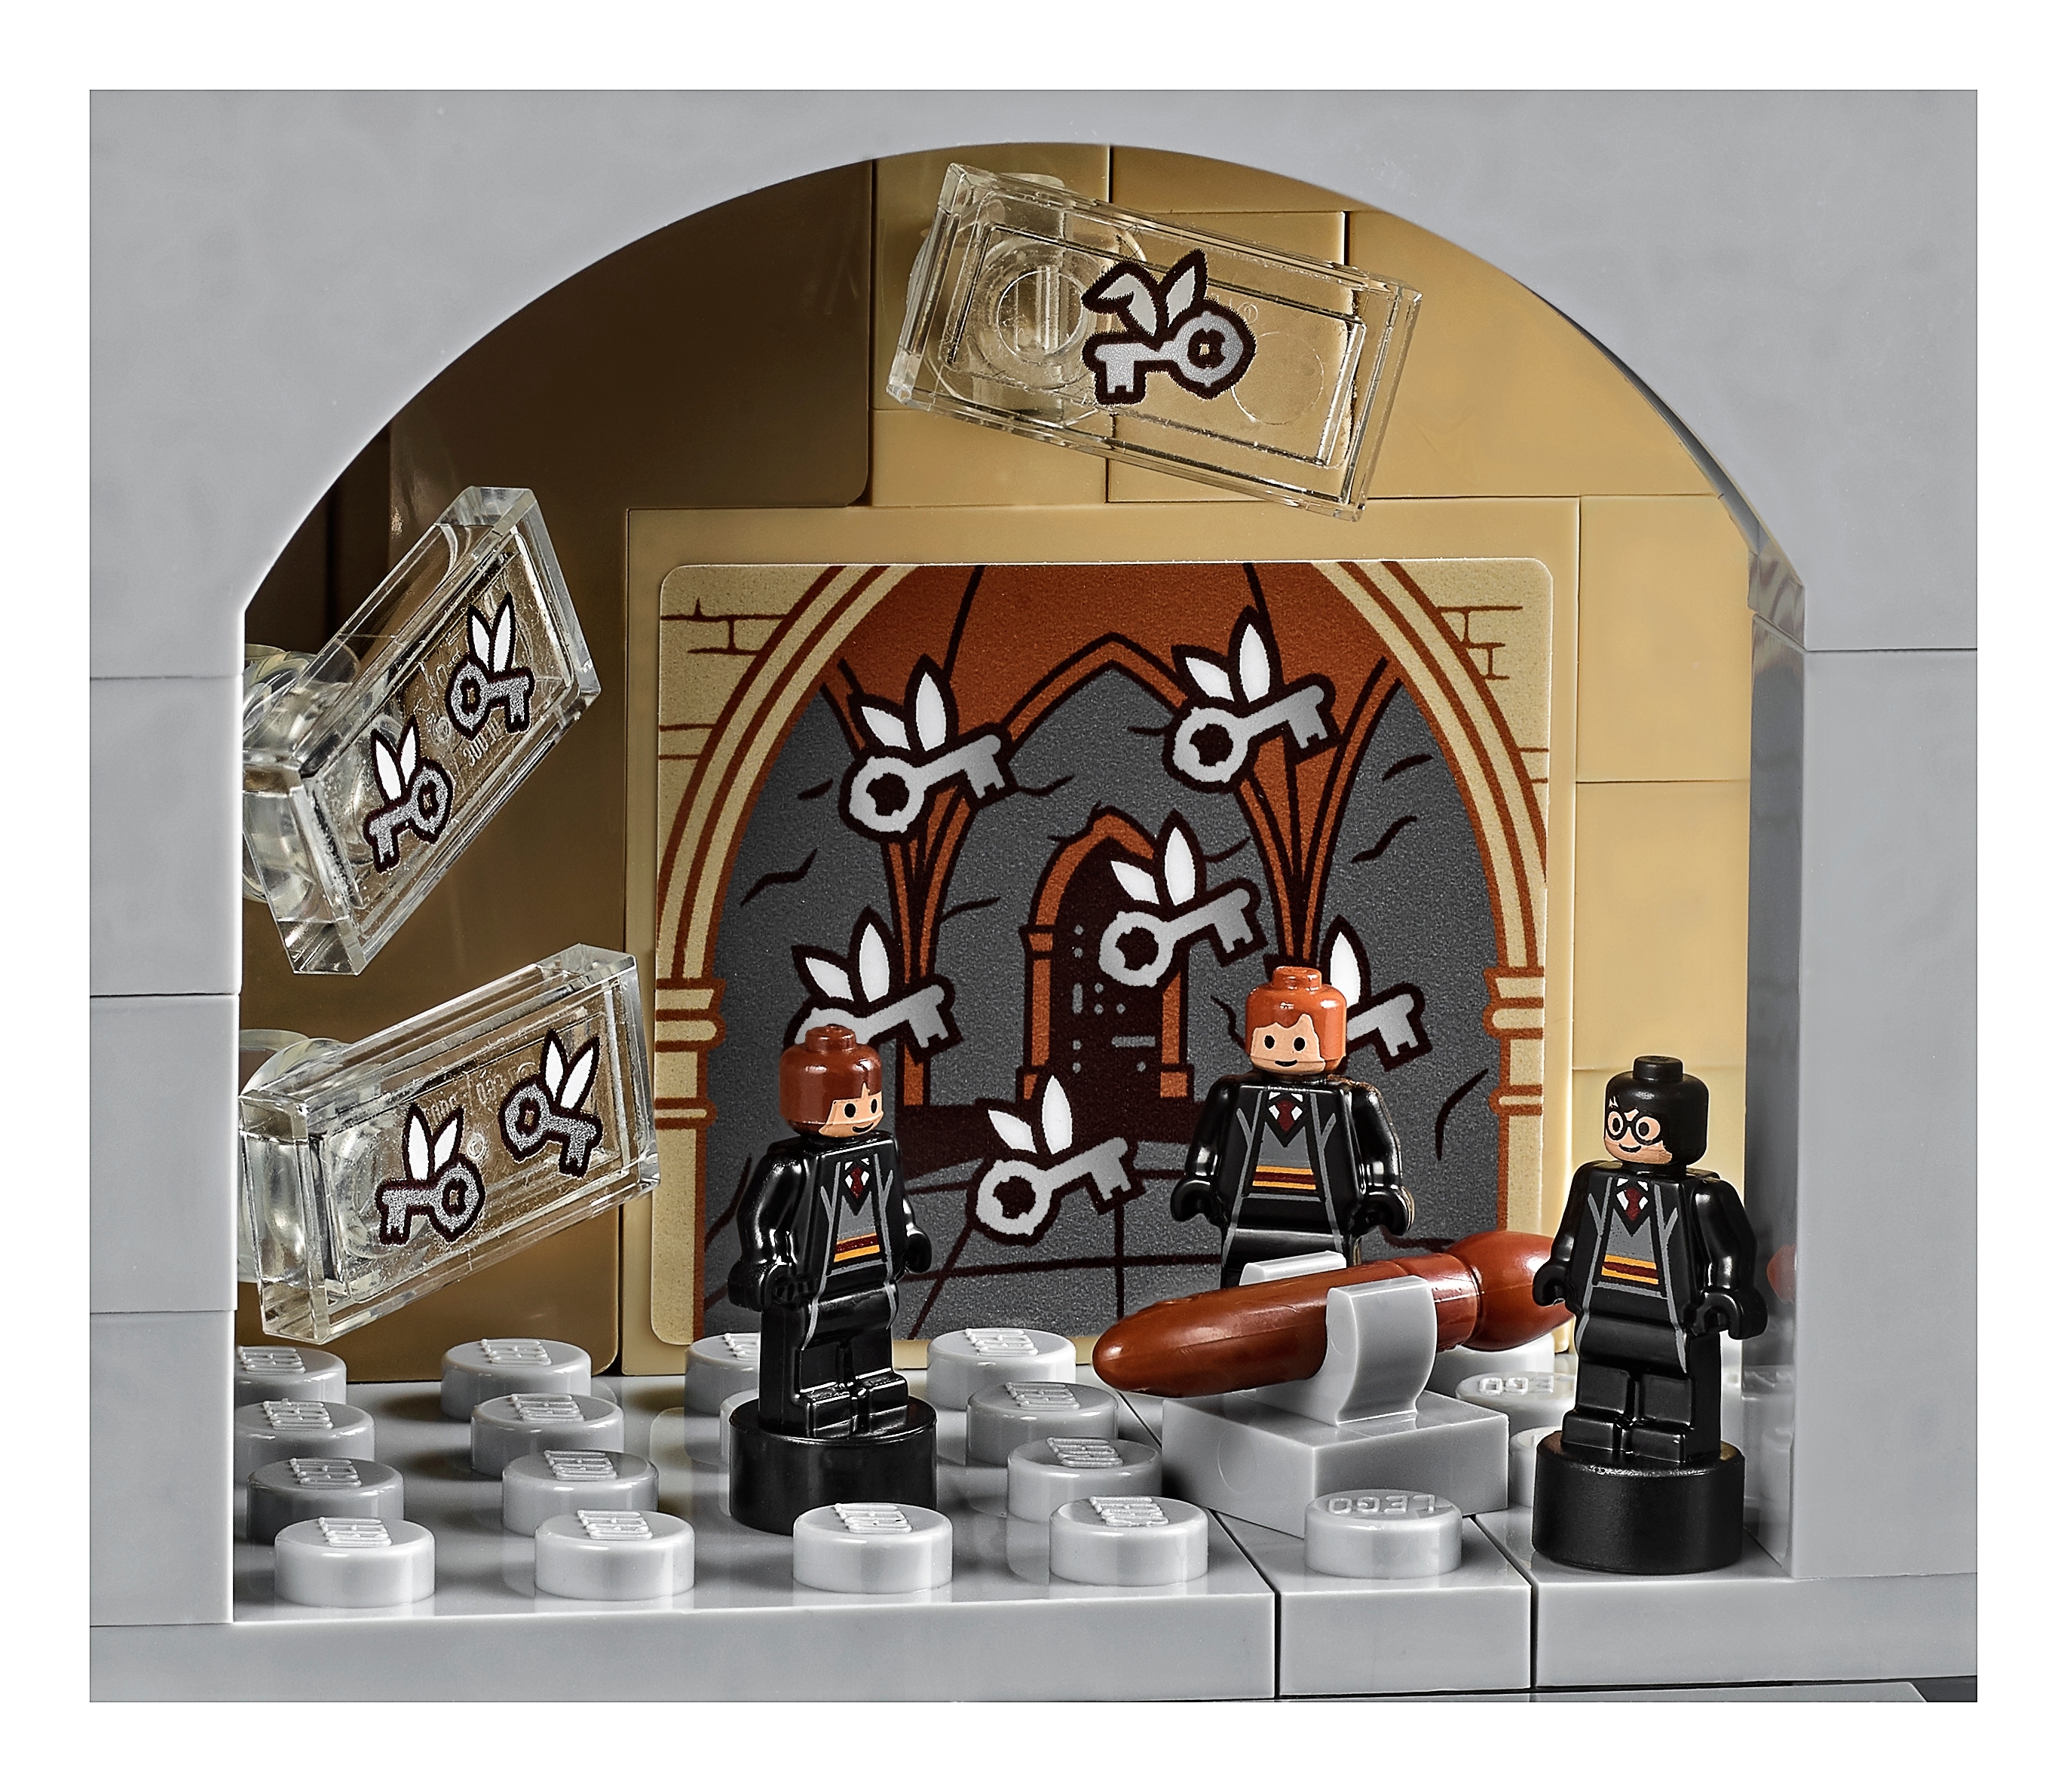 LEGO Harry Potter 71043 - Le Château de Poudlard - Le test en Français 